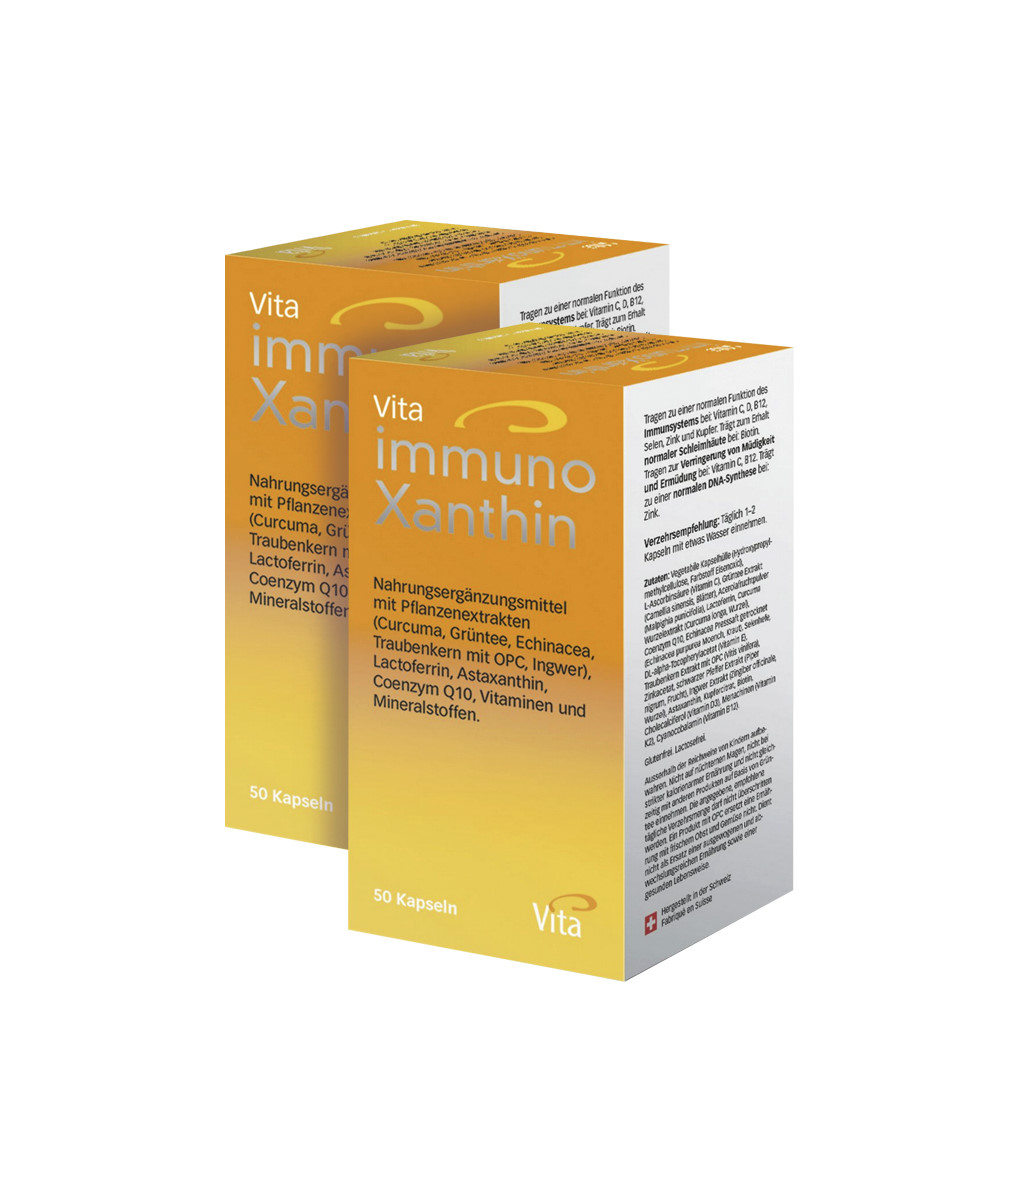 Vita Immunoxanthin, Double pack